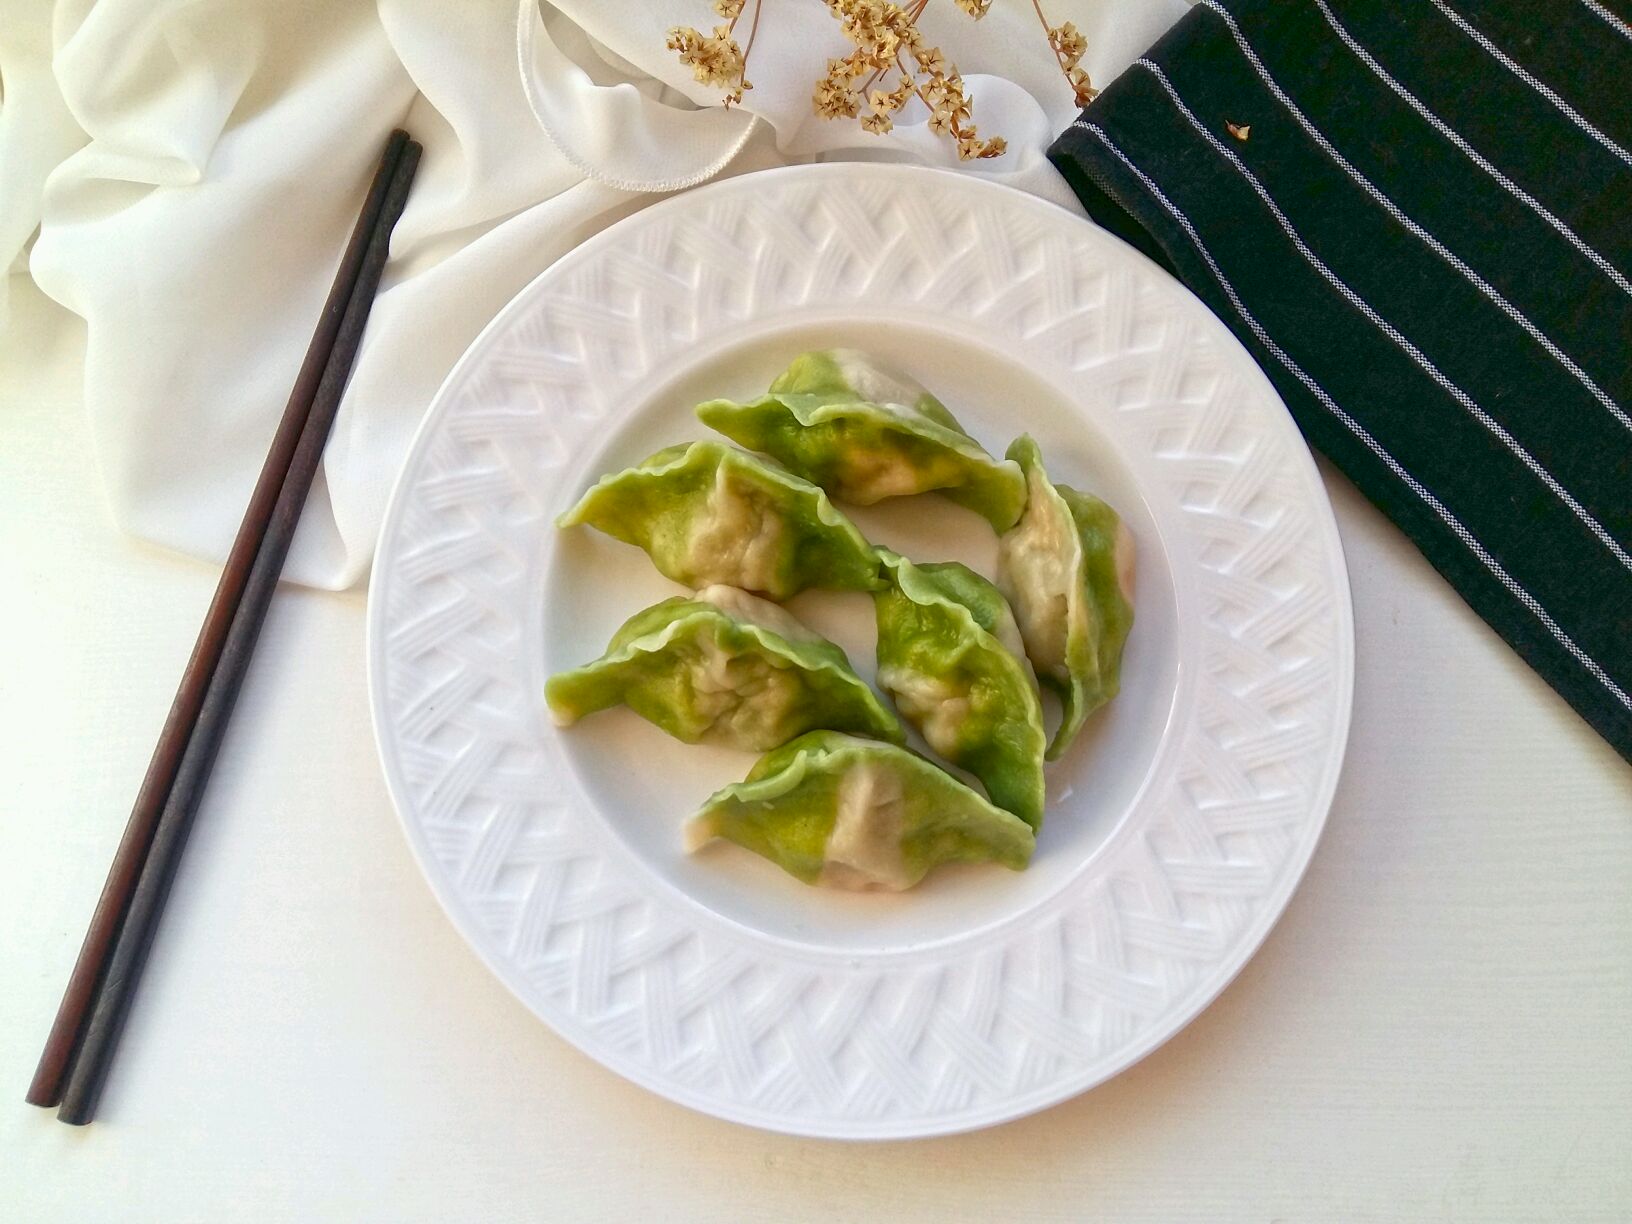 喜欢那春一般的绿——翡翠饺子